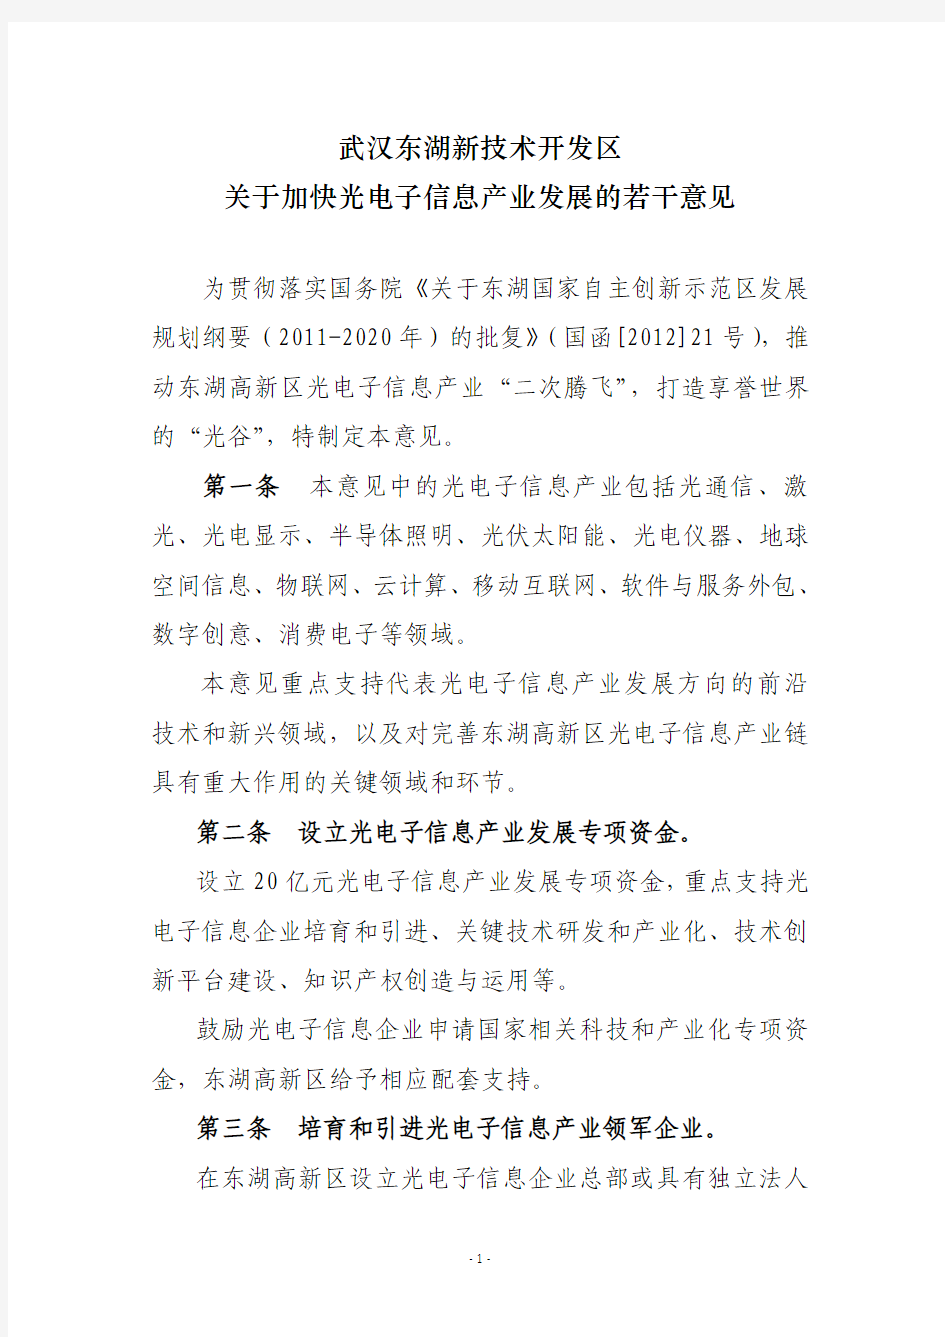 武汉东湖新技术开发区关于加快光电子信息产...